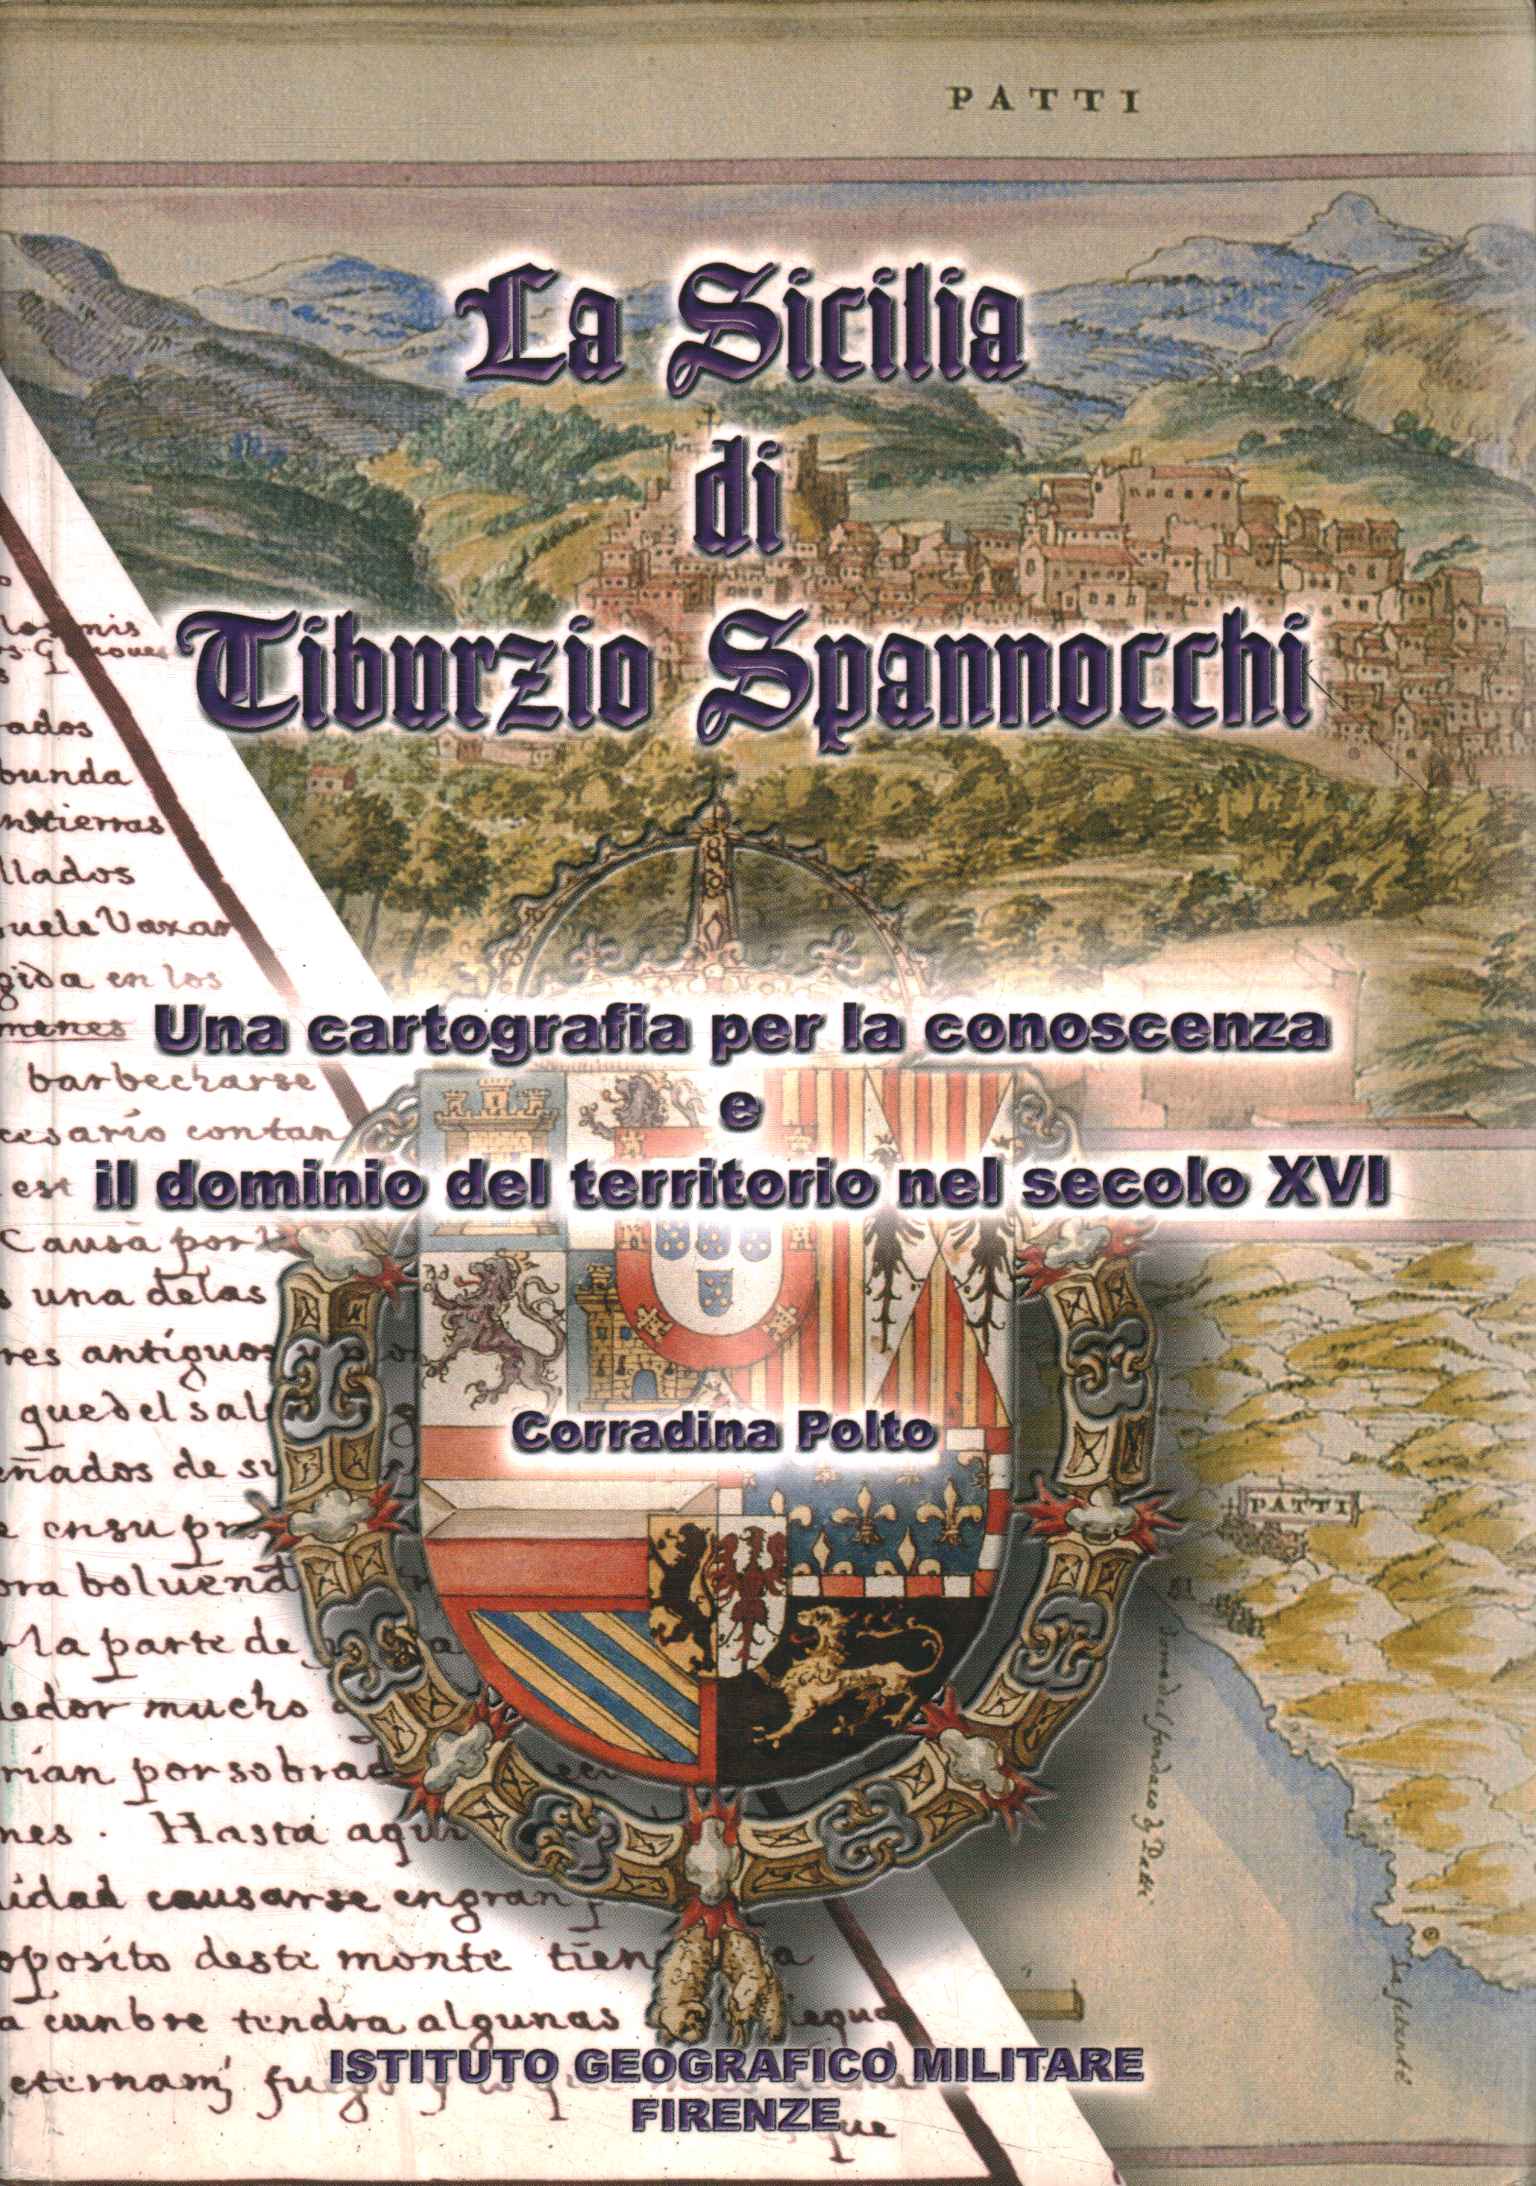 Das Sizilien von Triburzio Spannocchi